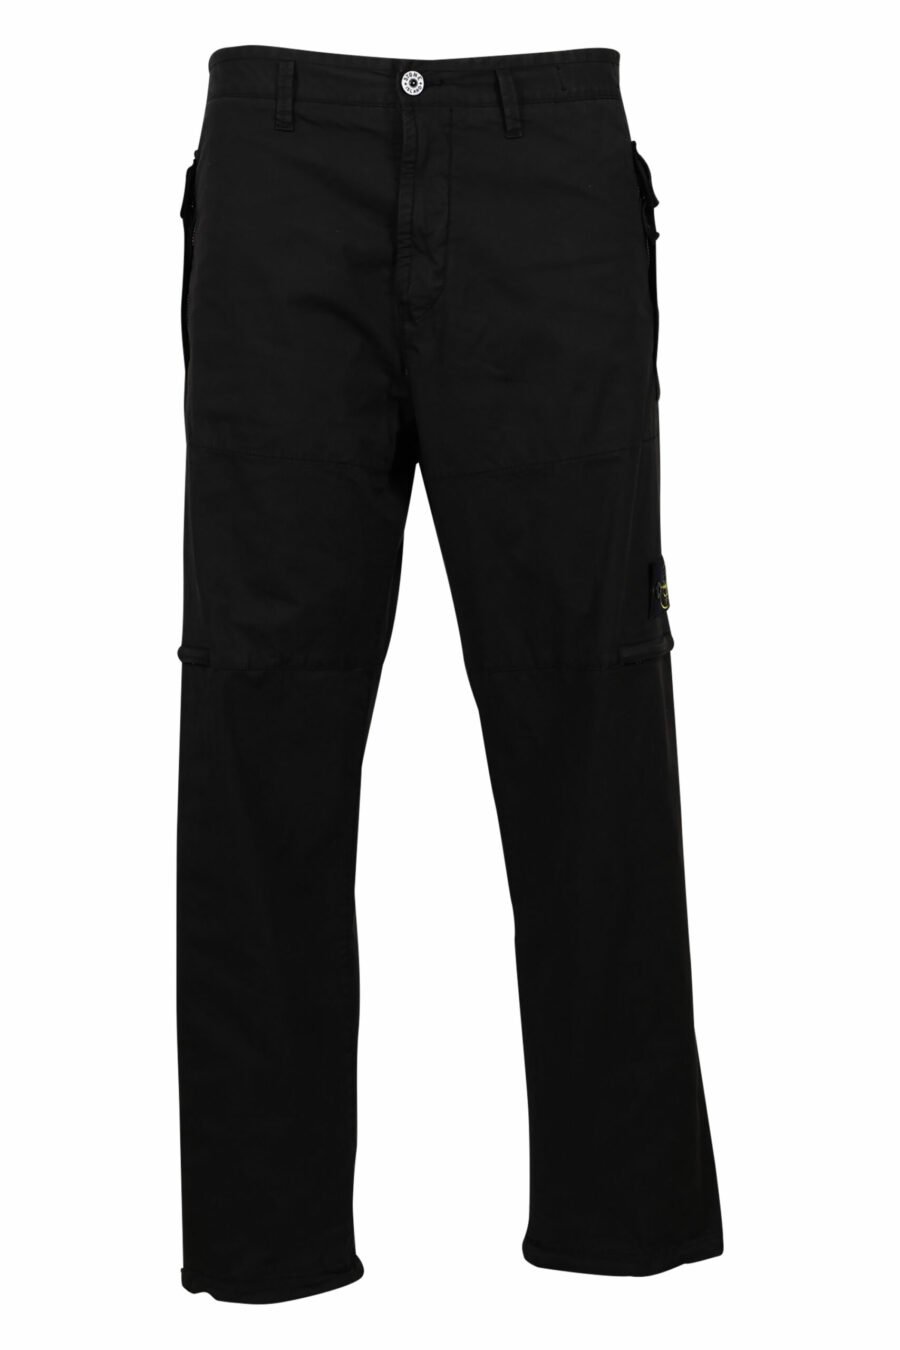 Pantalon cargo noir avec poches et écusson - 8052572731846